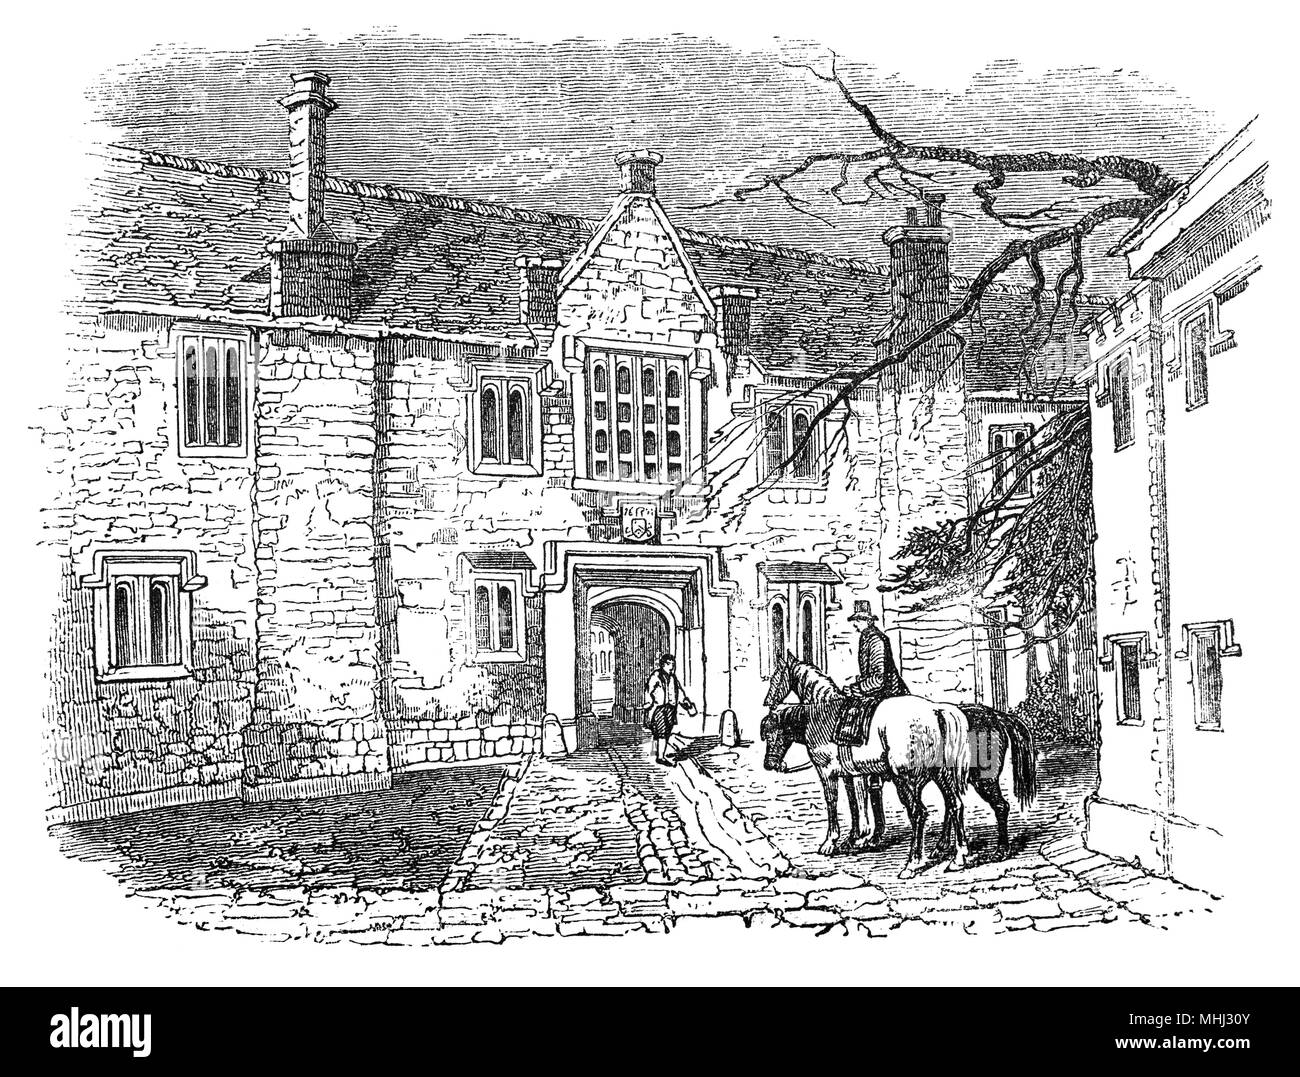 La passerelle intérieure de Chartreuse, un complexe de bâtiments historiques dans la région de Smithfield, Londres, datant du 14ème siècle. Il a commencé comme un prieuré de l'ordre des Chartreux, fondé en 1371 et dissous en 1537. Des fragments importants subsistent de cette période monastique, mais le site a été en grande partie reconstruite après 1545 comme une grande randonnée de 16ème siècle. La Chartreuse a été remaniée et agrandie après 1611, lorsqu'il est devenu un hospice et école, dotée par Thomas Sutton. L'hospice (maison pour messieurs retraités) occupe encore le site aujourd'hui sous le nom de la Chartreuse. Banque D'Images